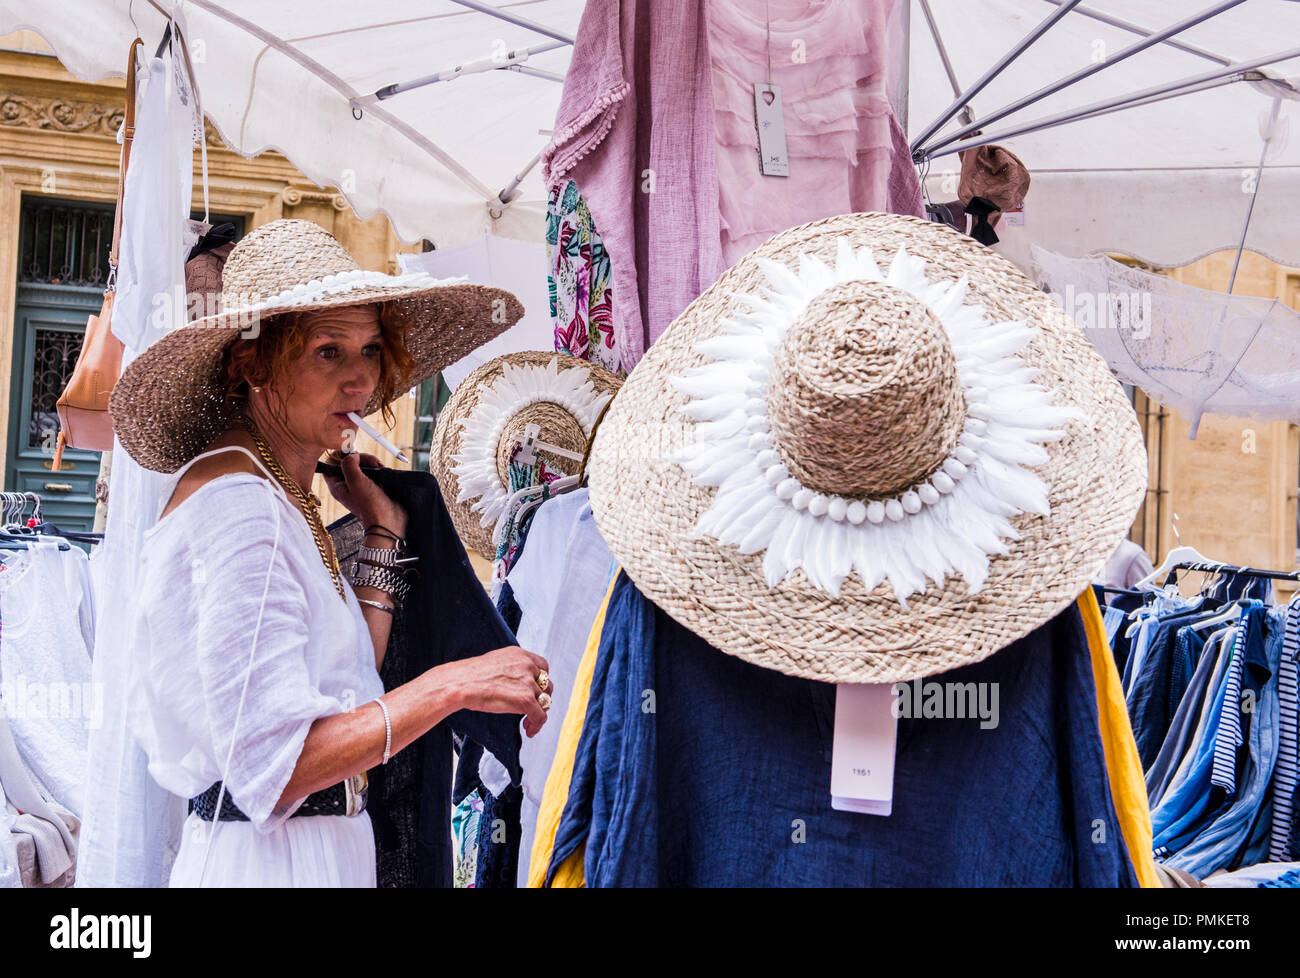 Markt Inhaber stall Stall vorbereiten, tragen, Stroh, Hut, der die Feder im Mund, Aix-en-Provence, Cote d'Azur, Frankreich, Europa Stockfoto